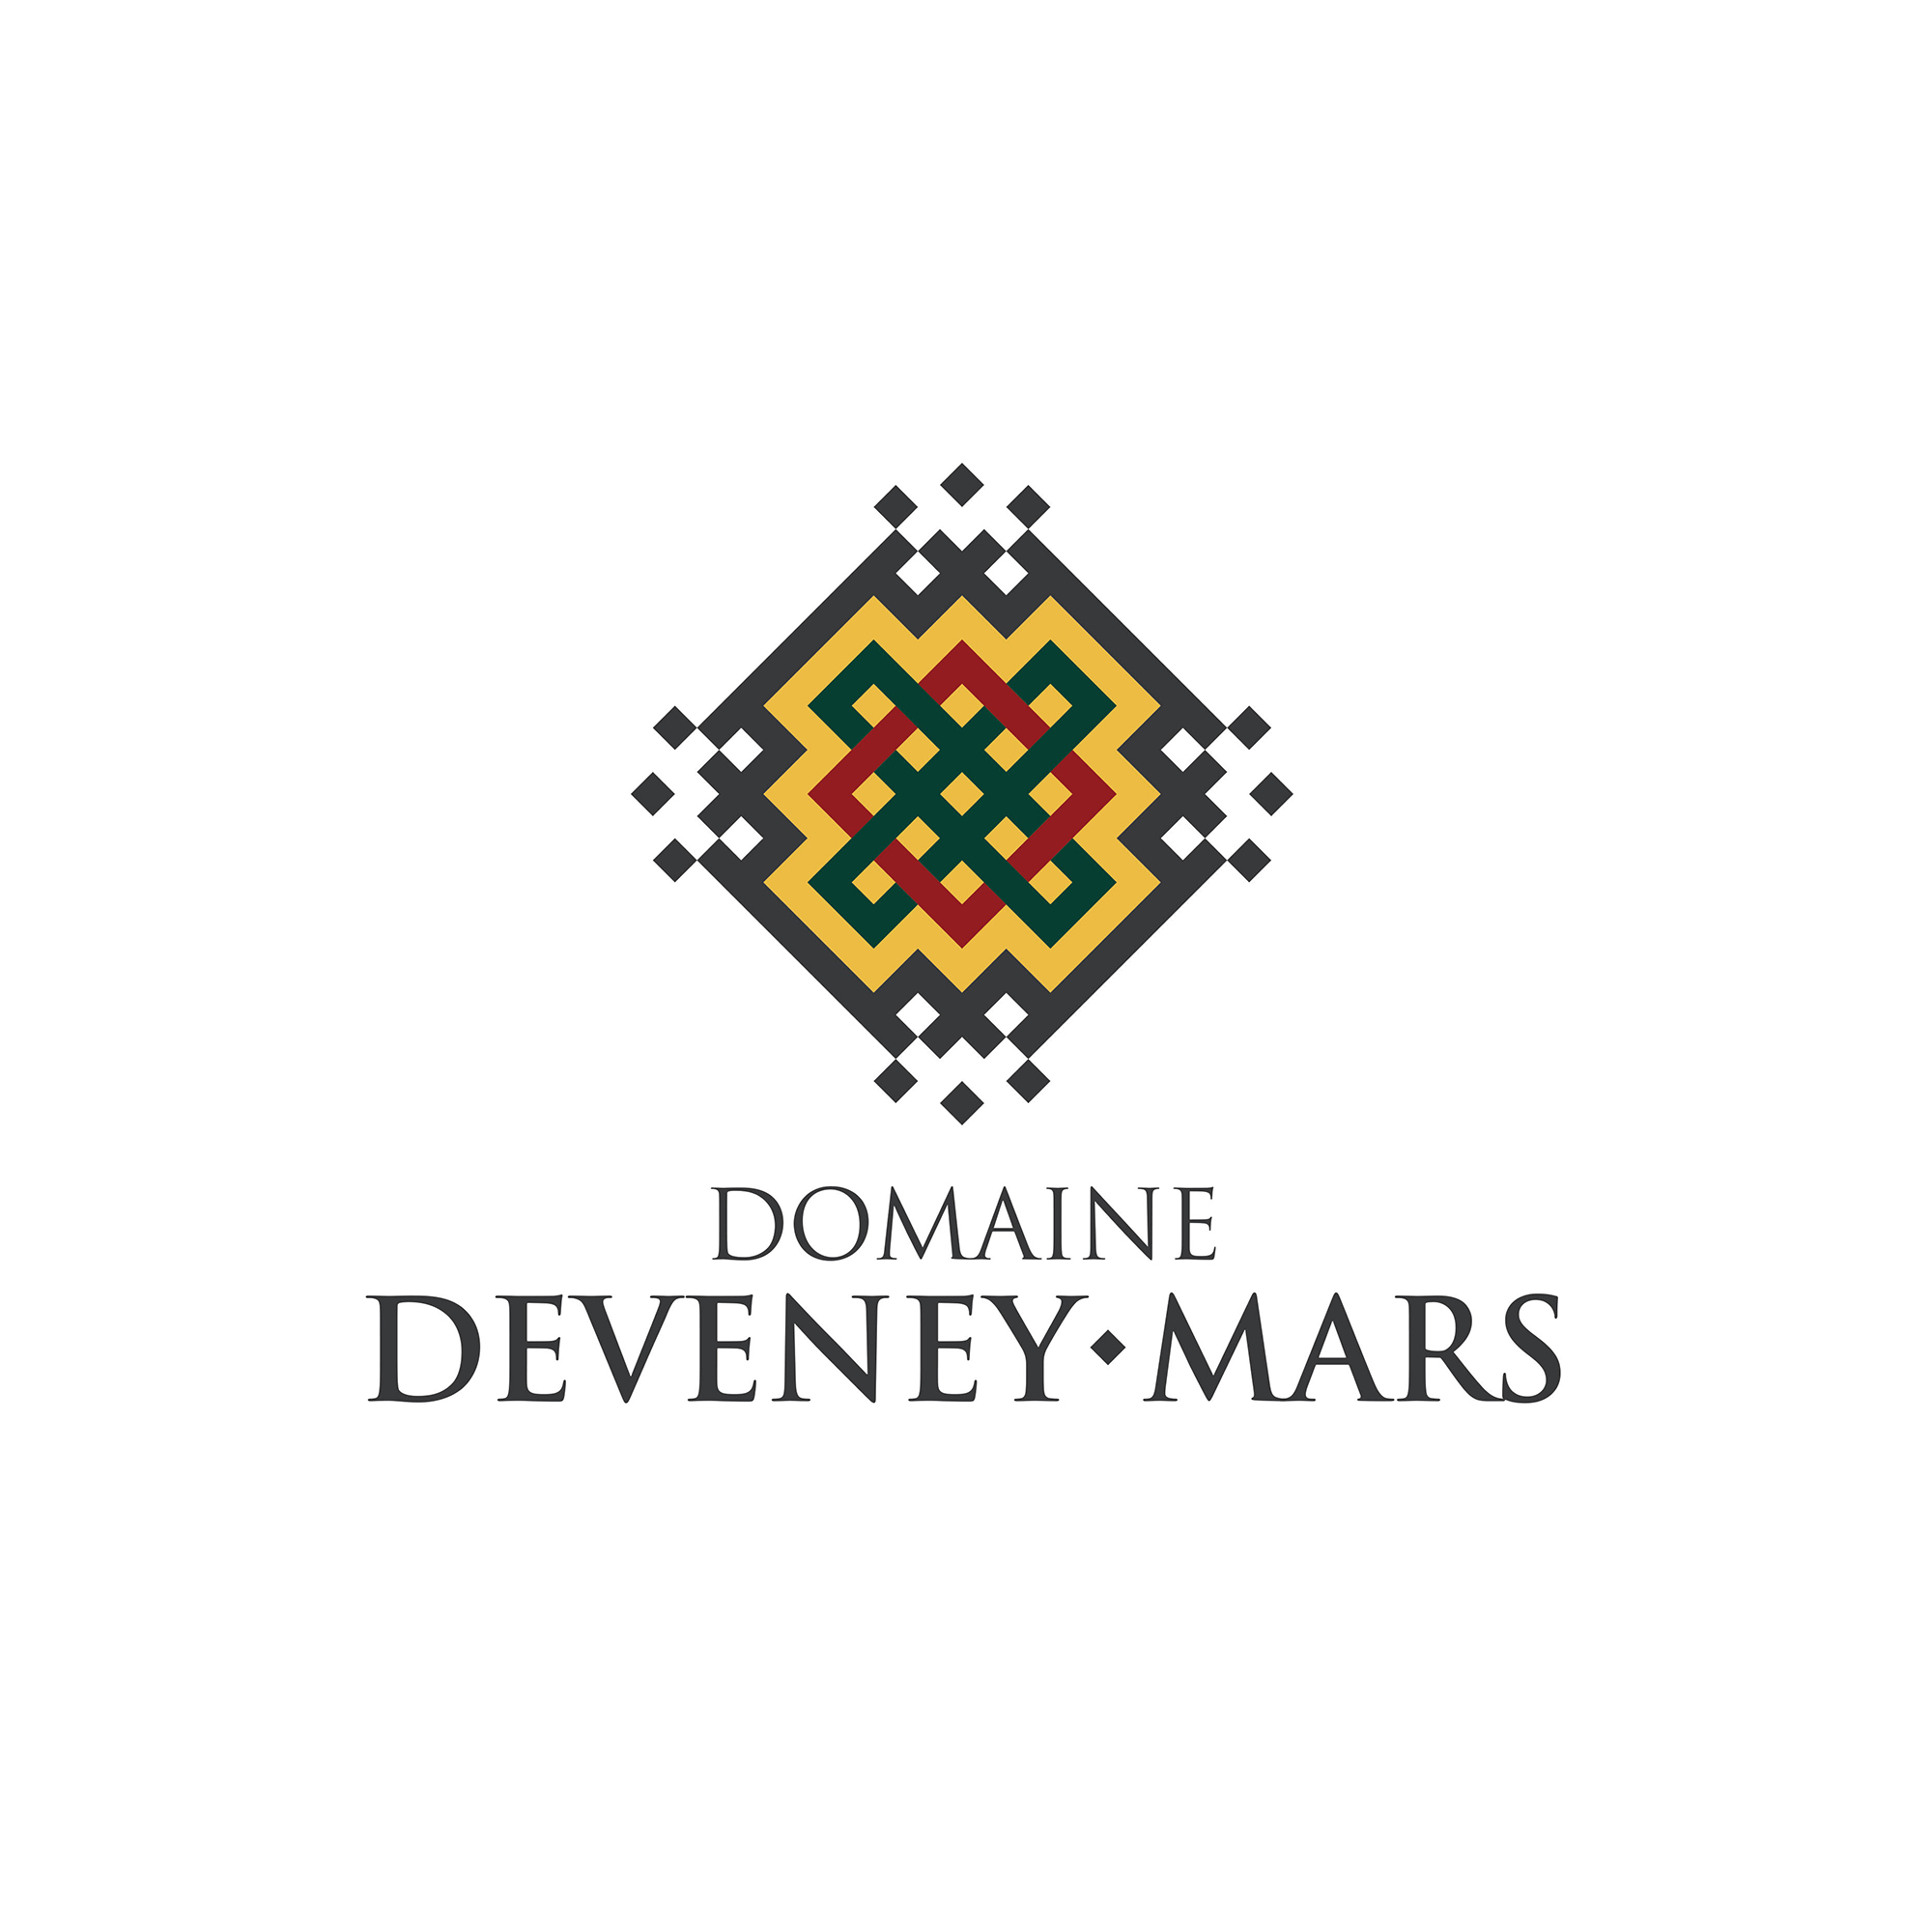 Deveney Mars